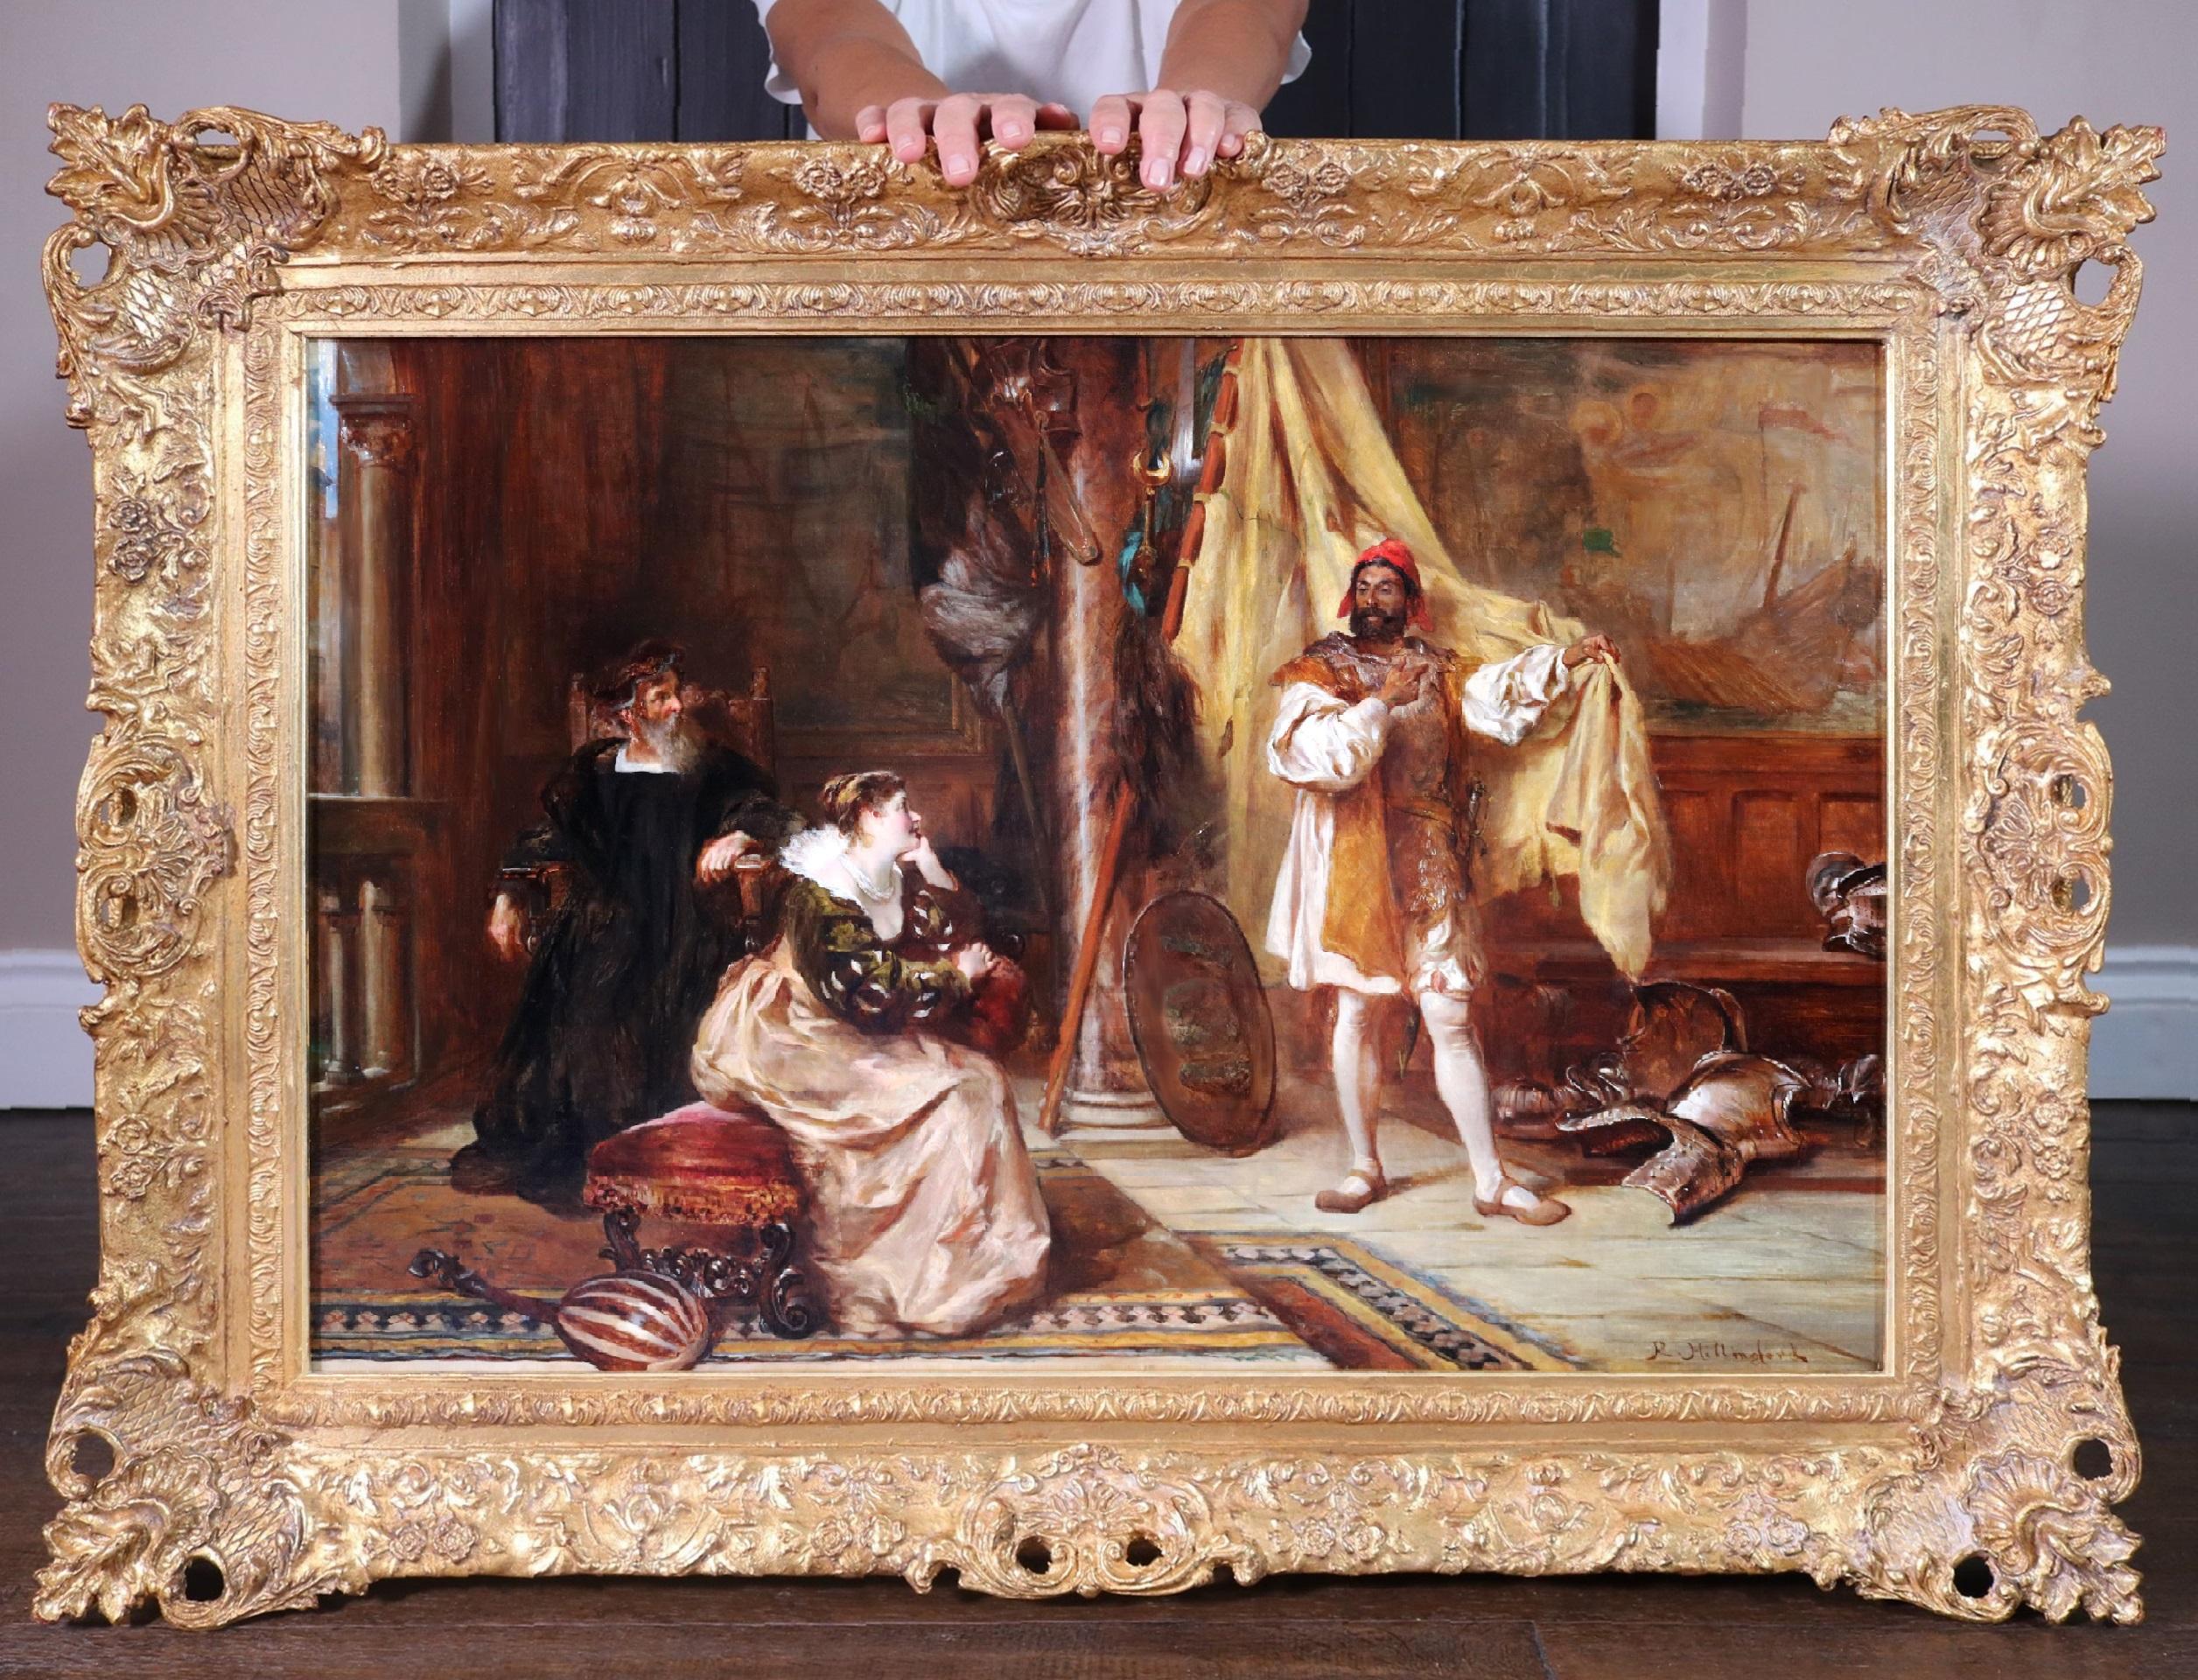 Portrait Painting Robert Alexander Hillingford - Othello & Desdemona - Peinture à l'huile du 19ème siècle de la pièce de Shakespeare Venise Italie